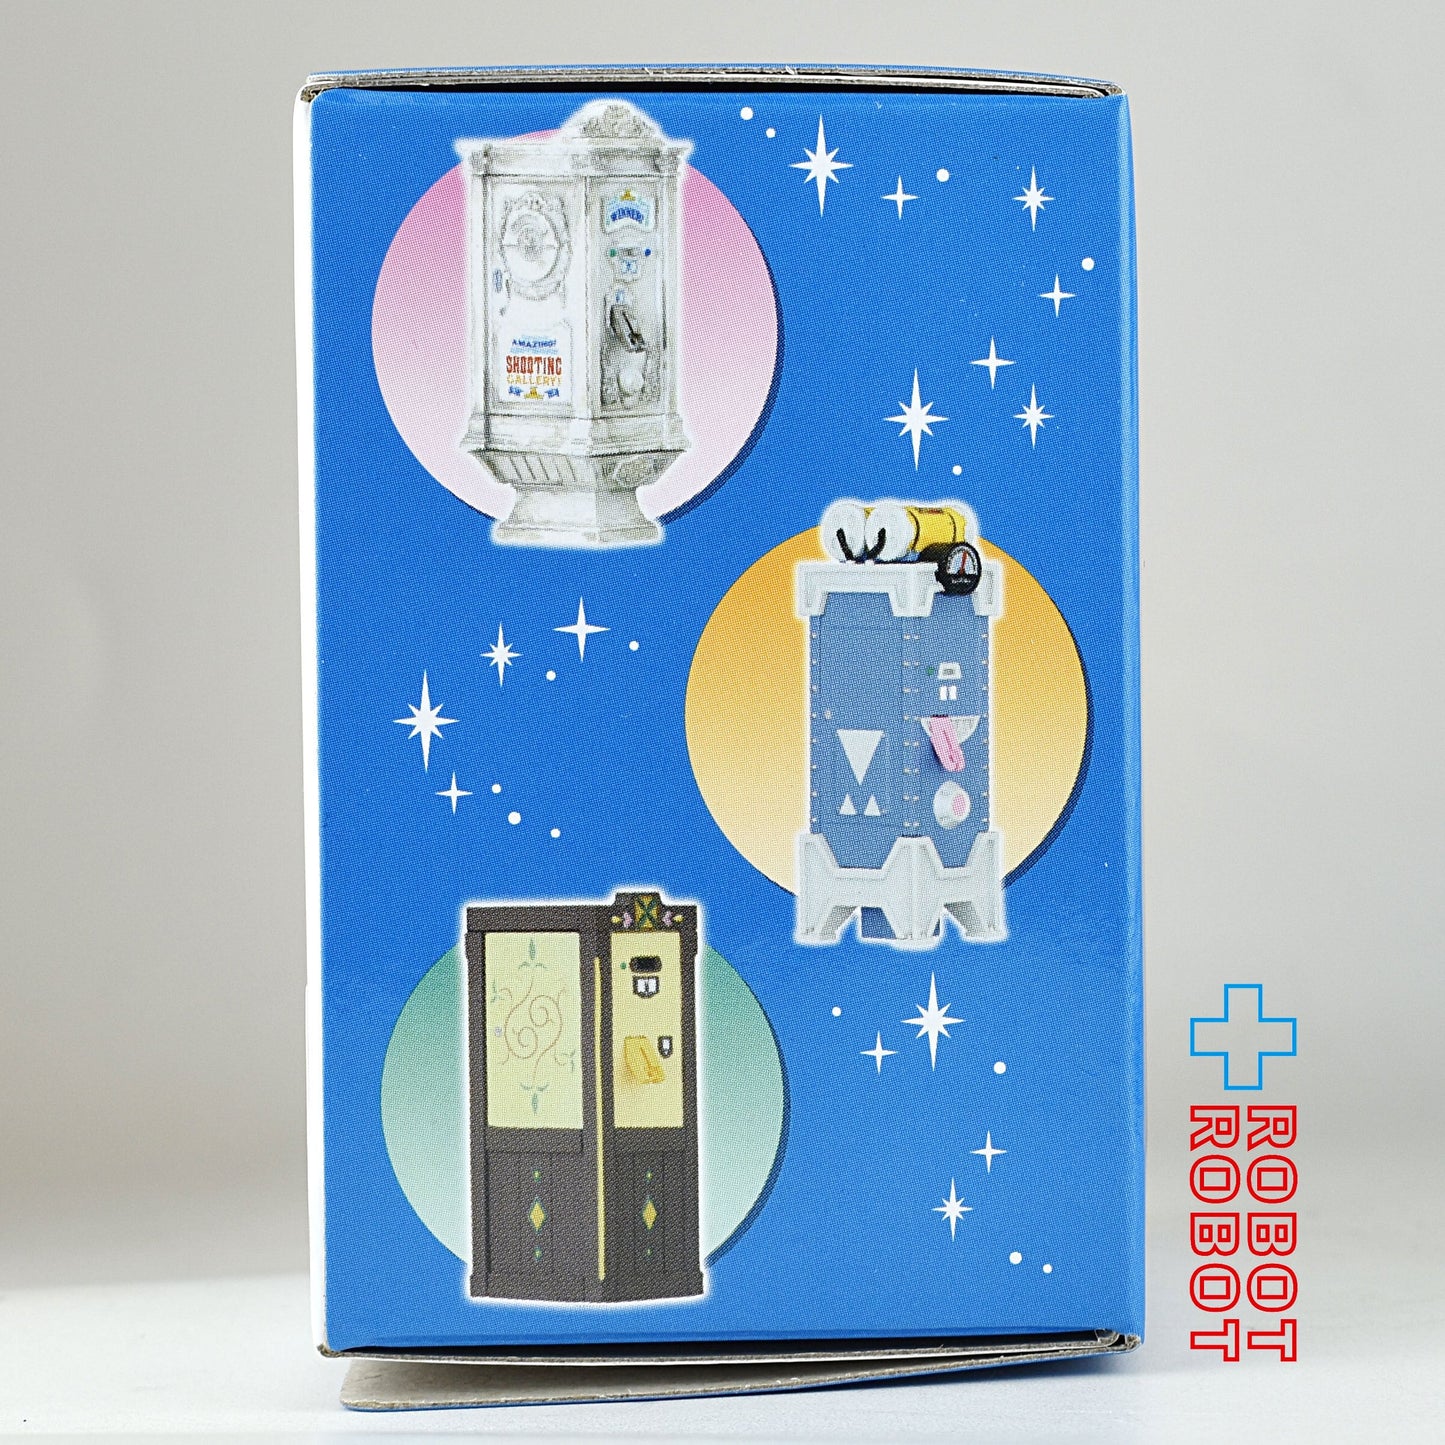 東京ディズニーランド ファストパス発券機 プーさんのハニーハント ミニチュアコレクション フィギュア 開封